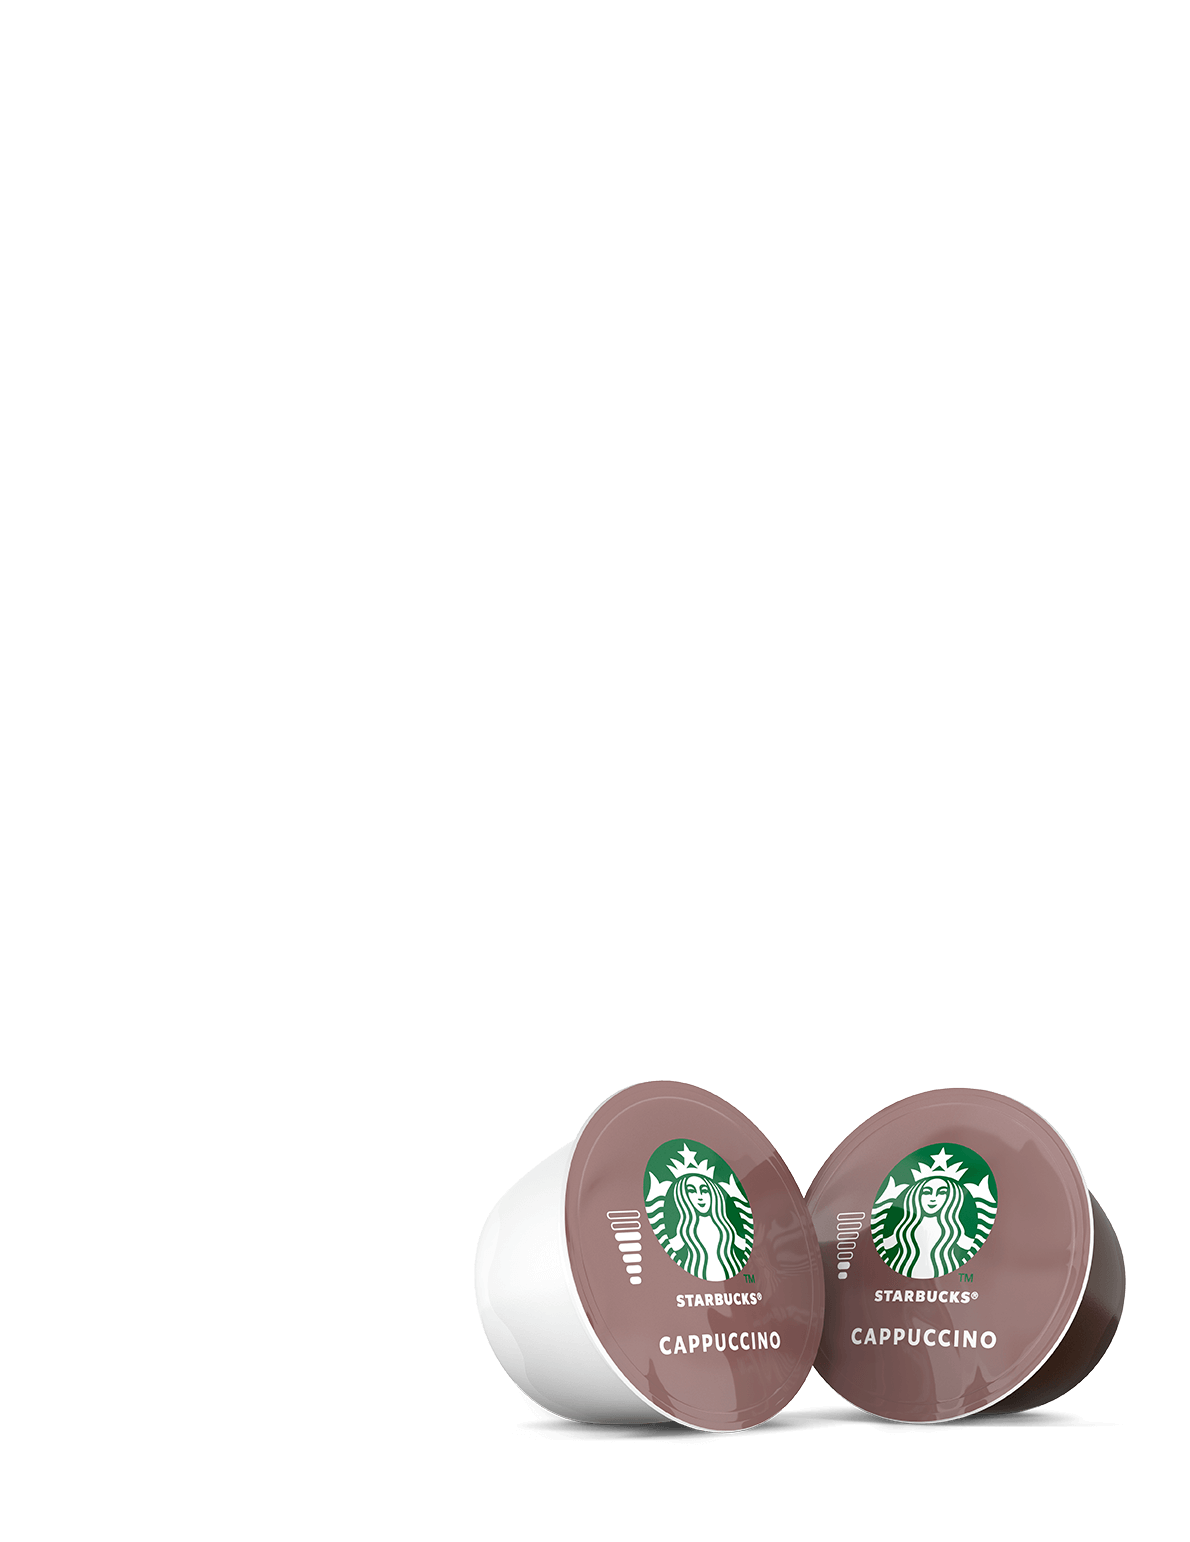 NESCAFÉ Dolce Gusto Chile - Disfruta el café de Starbucks en tu casa, ahora  con un mug de regalo. Encuentra tu Pack Starbucks en Jumbo y Líder. Incluye  un Caramel Macchiato, un